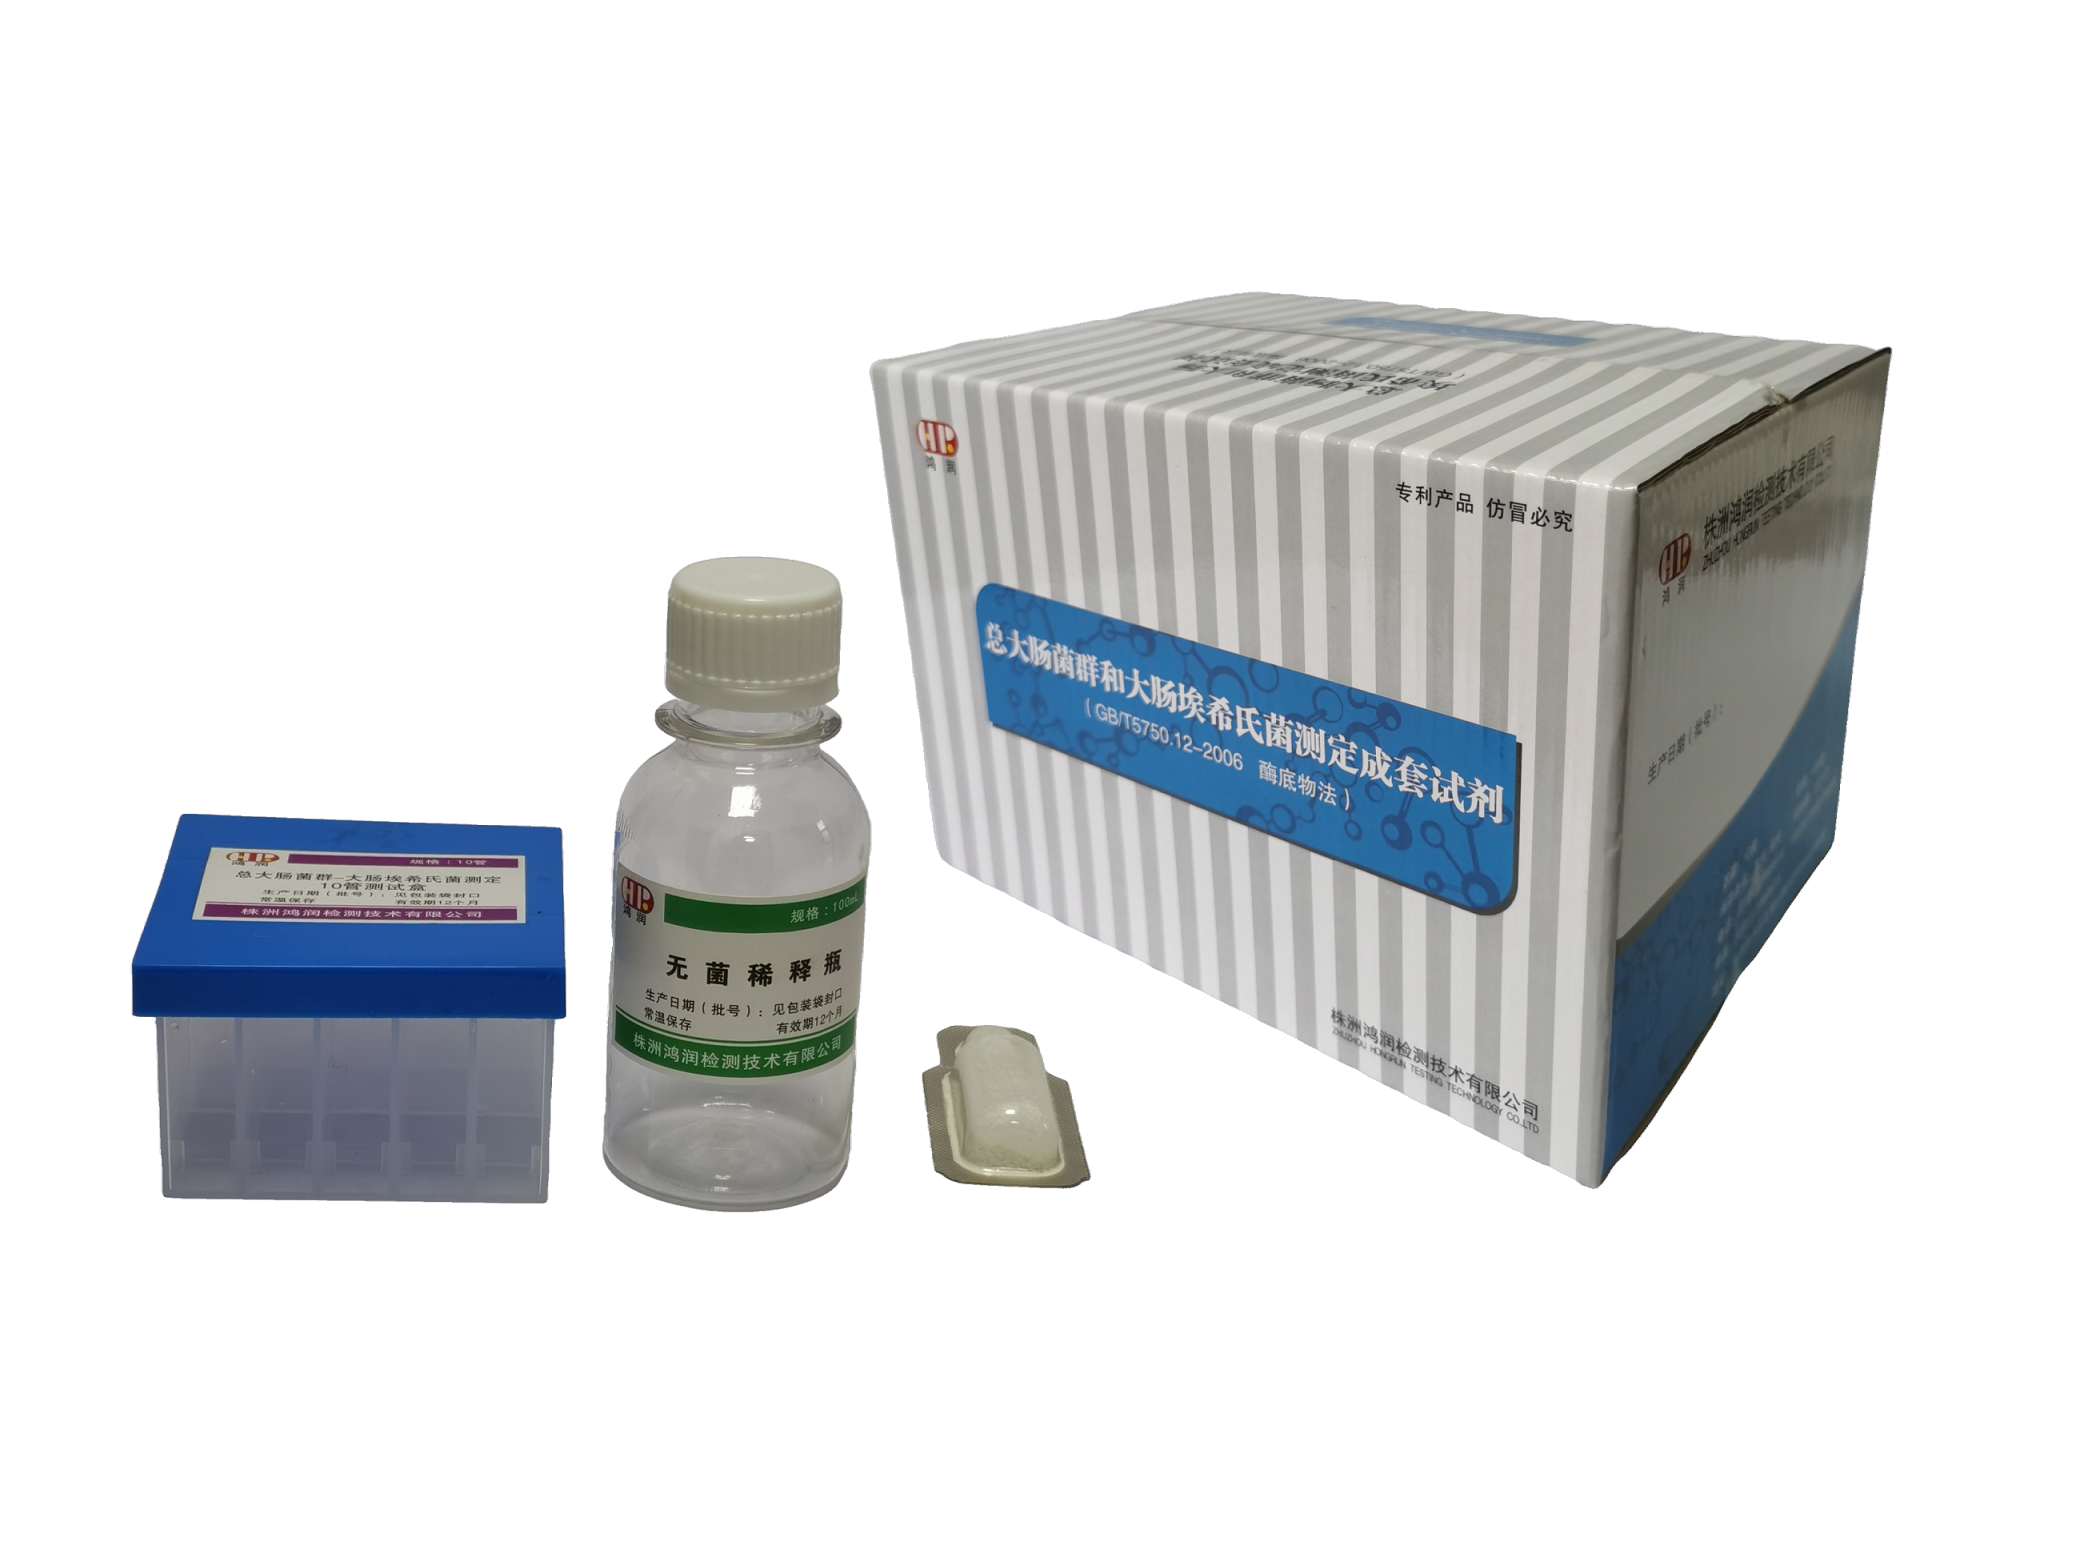 總大腸菌群—大腸埃希氏菌測定試劑盒（酶底物法）